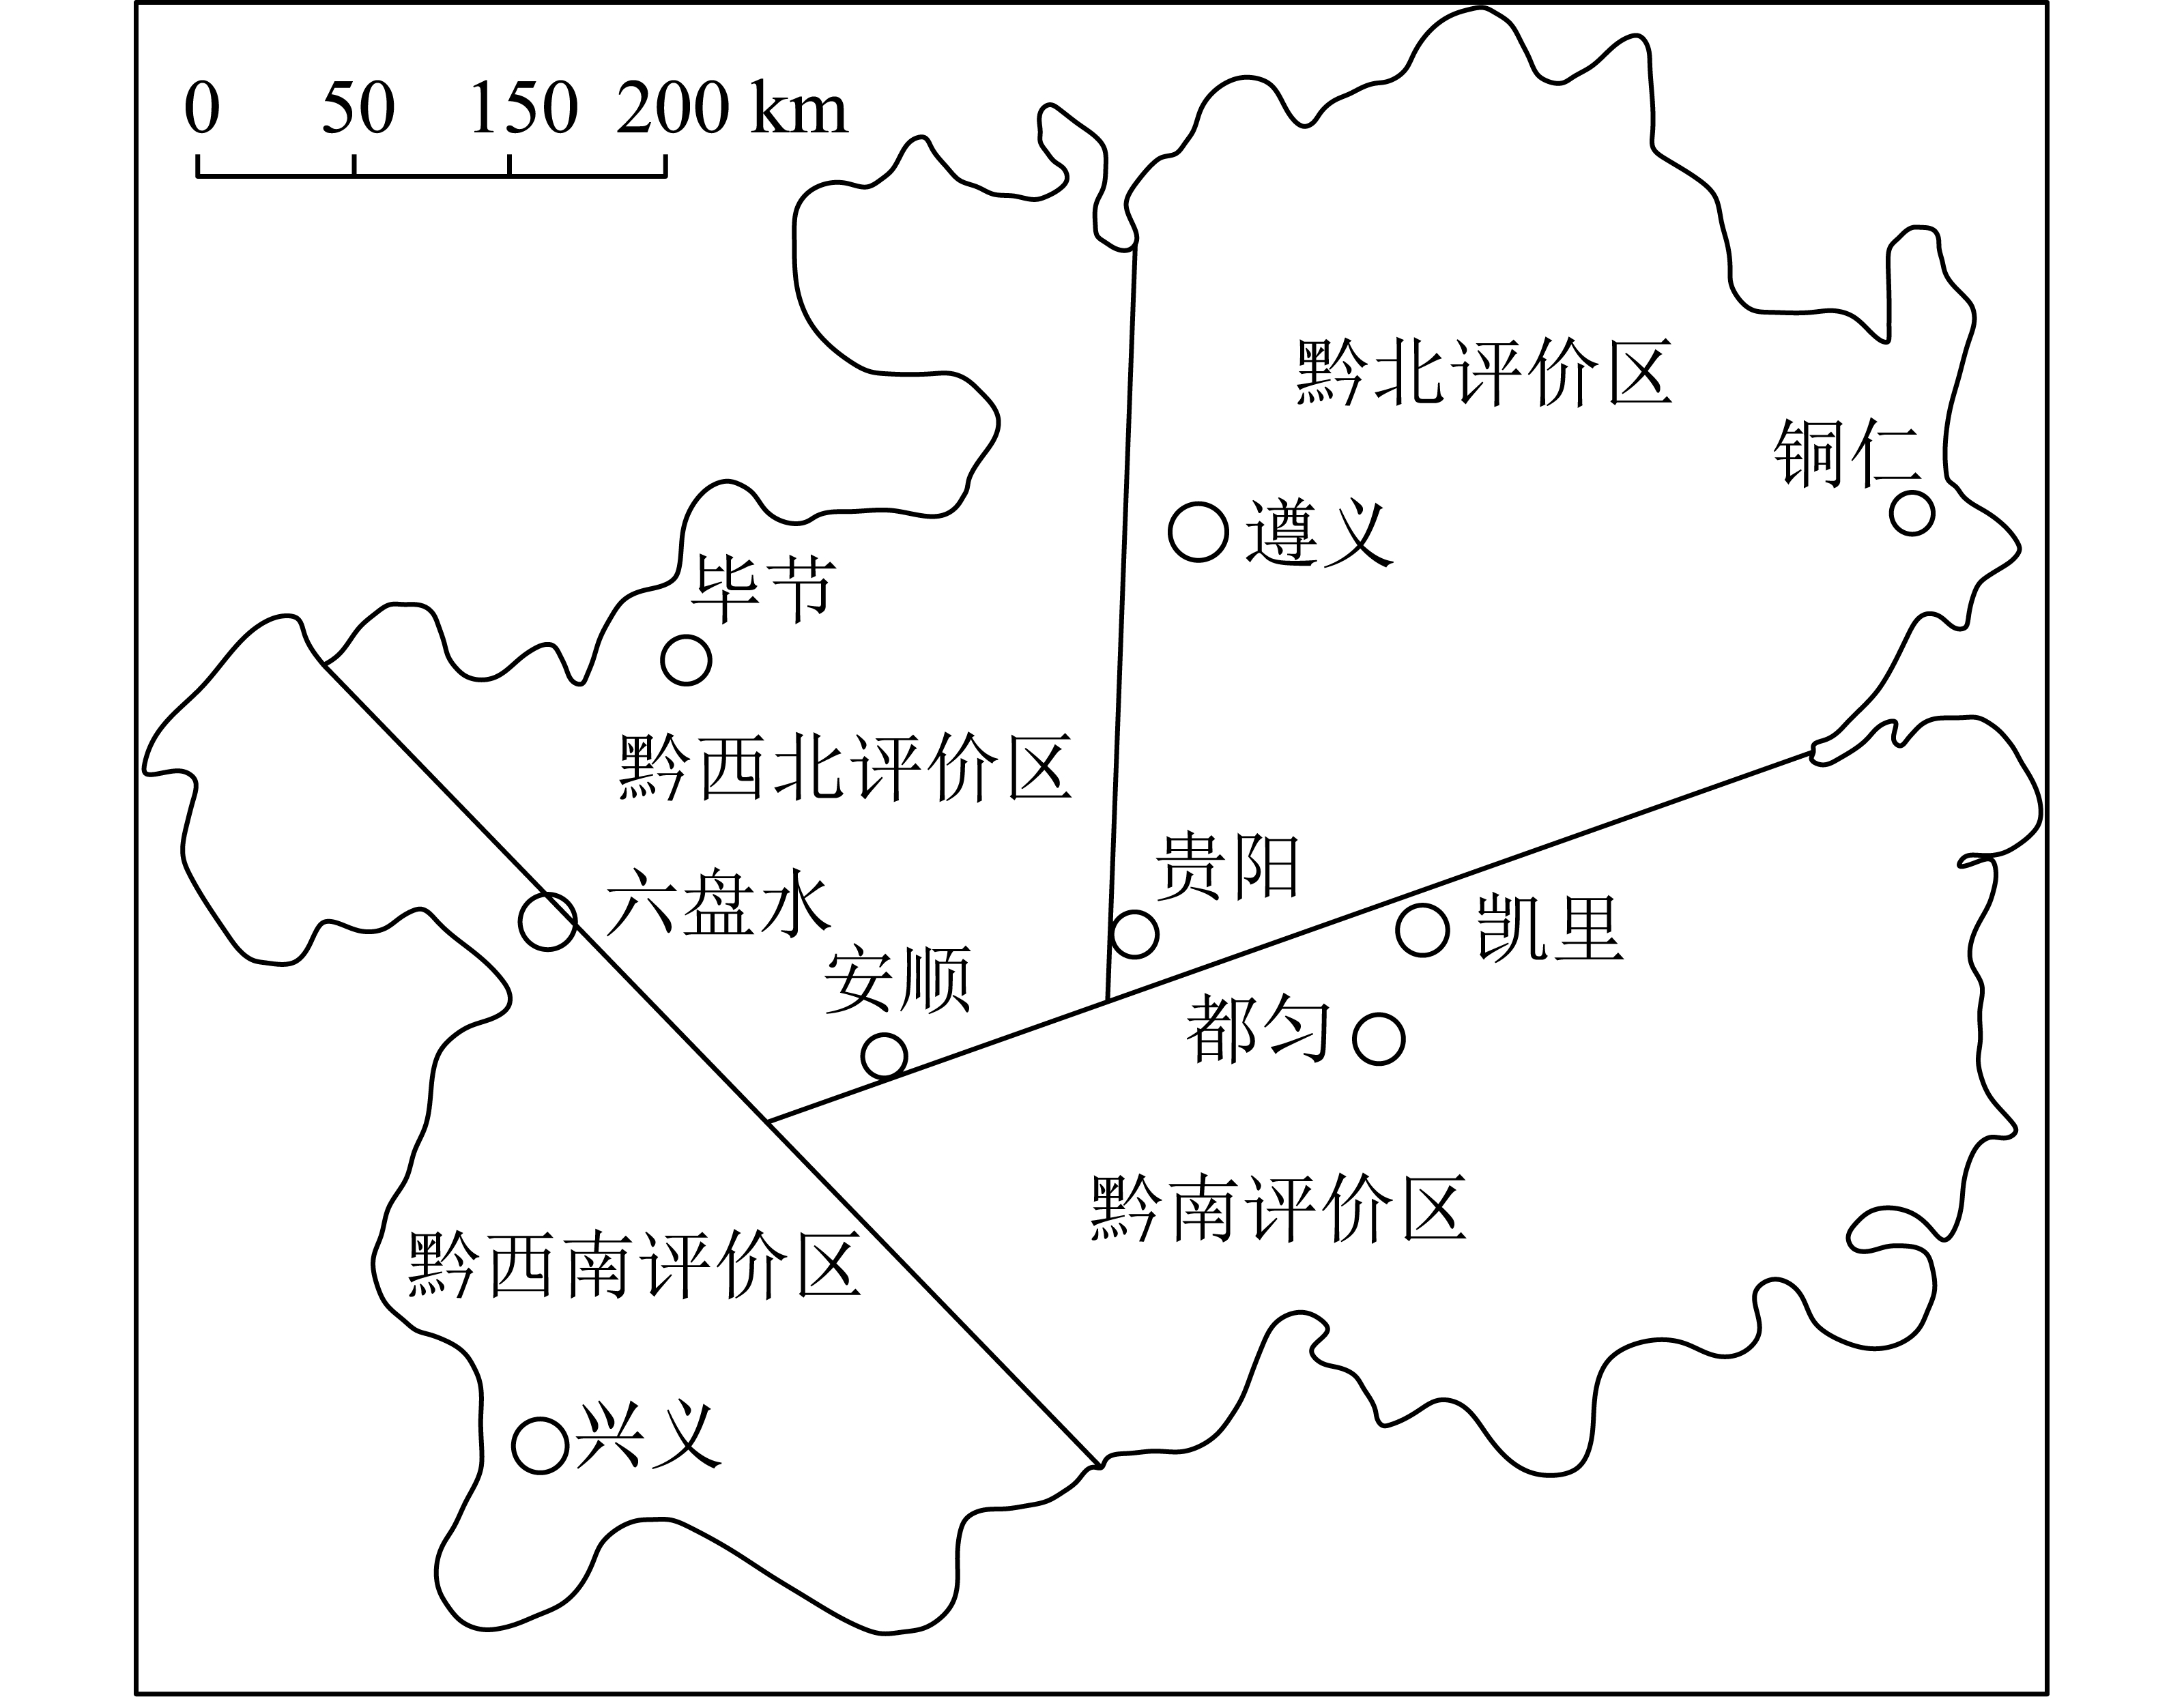 页岩气在贵州省开发利用的现状及难题